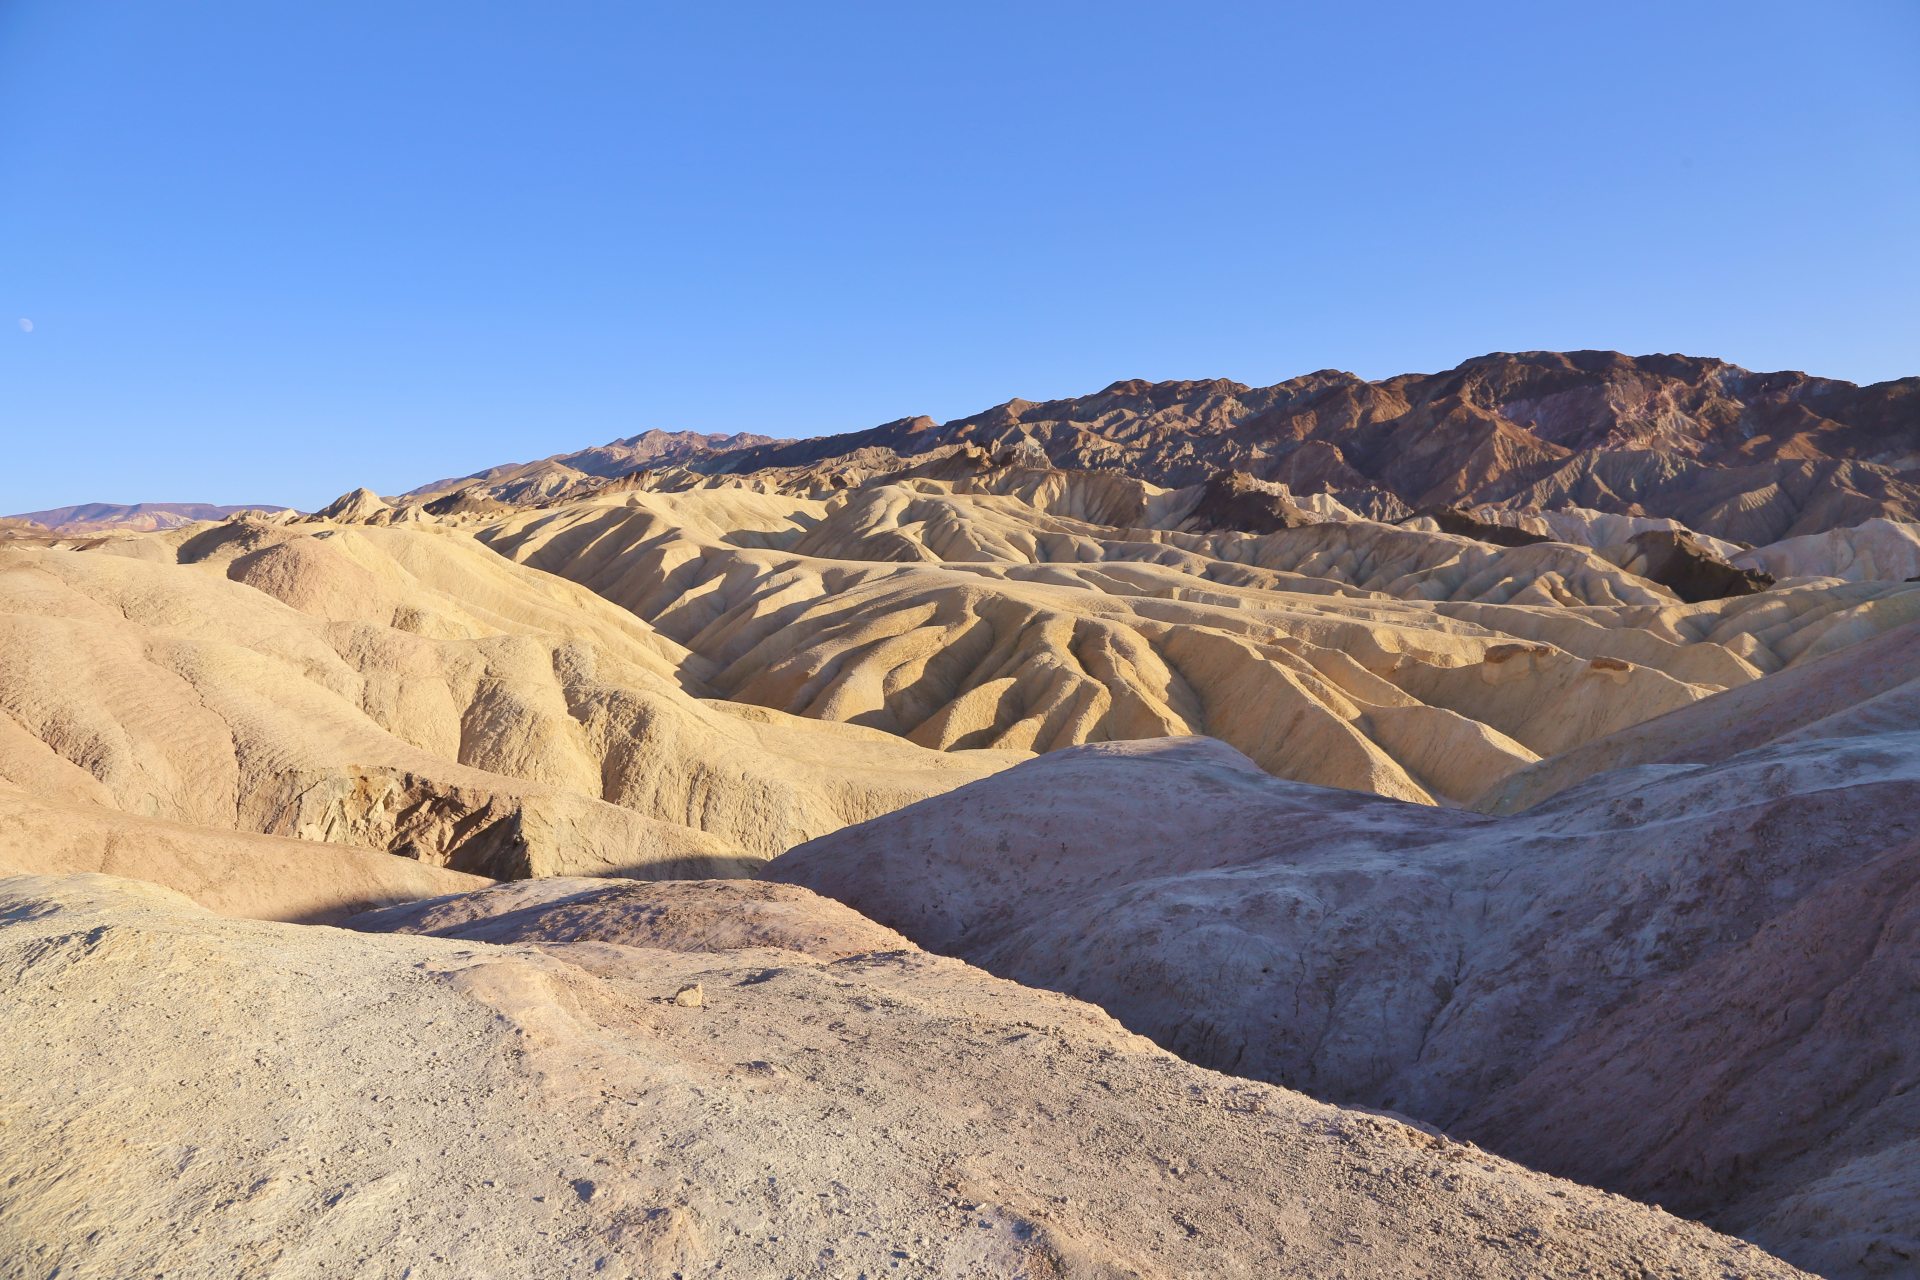 Viel Licht und wenig Schatten - Death Valley National Park, Erosion, Gebirgszug, Gestein, Himmel, Kalifornien, Landschaft, Mojave-Wüste, Sandstein, Wüste, Zabriskie Point - (Furnace Creek, Death Valley, California, Vereinigte Staaten)